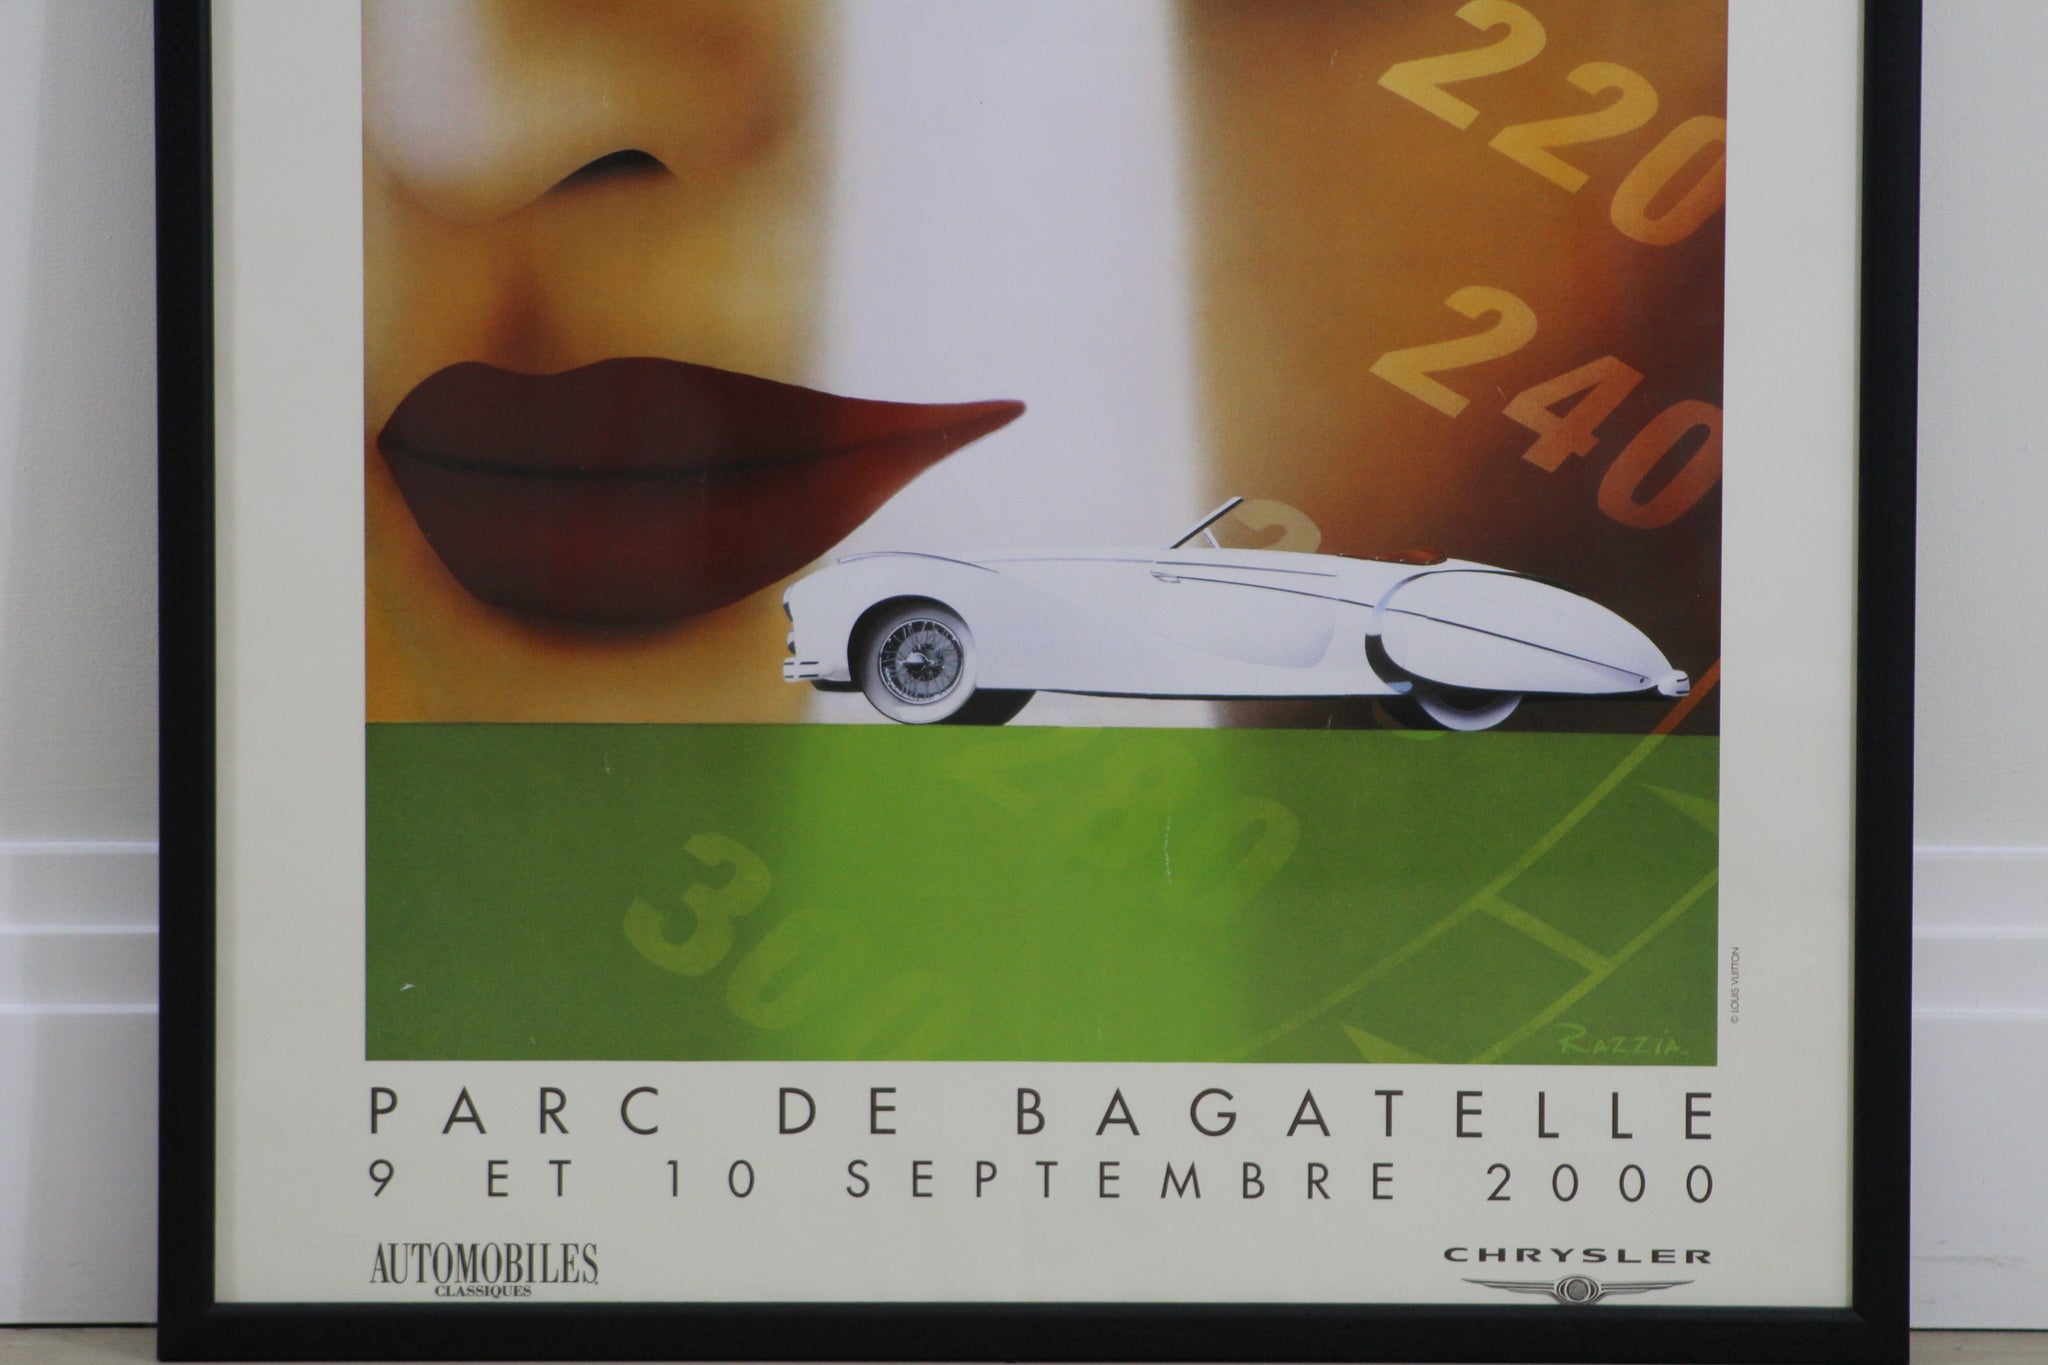 Razzia - Louis Vuitton Parc de Bagatelle Concours d' Elegance 2000 Poster  by Razzia